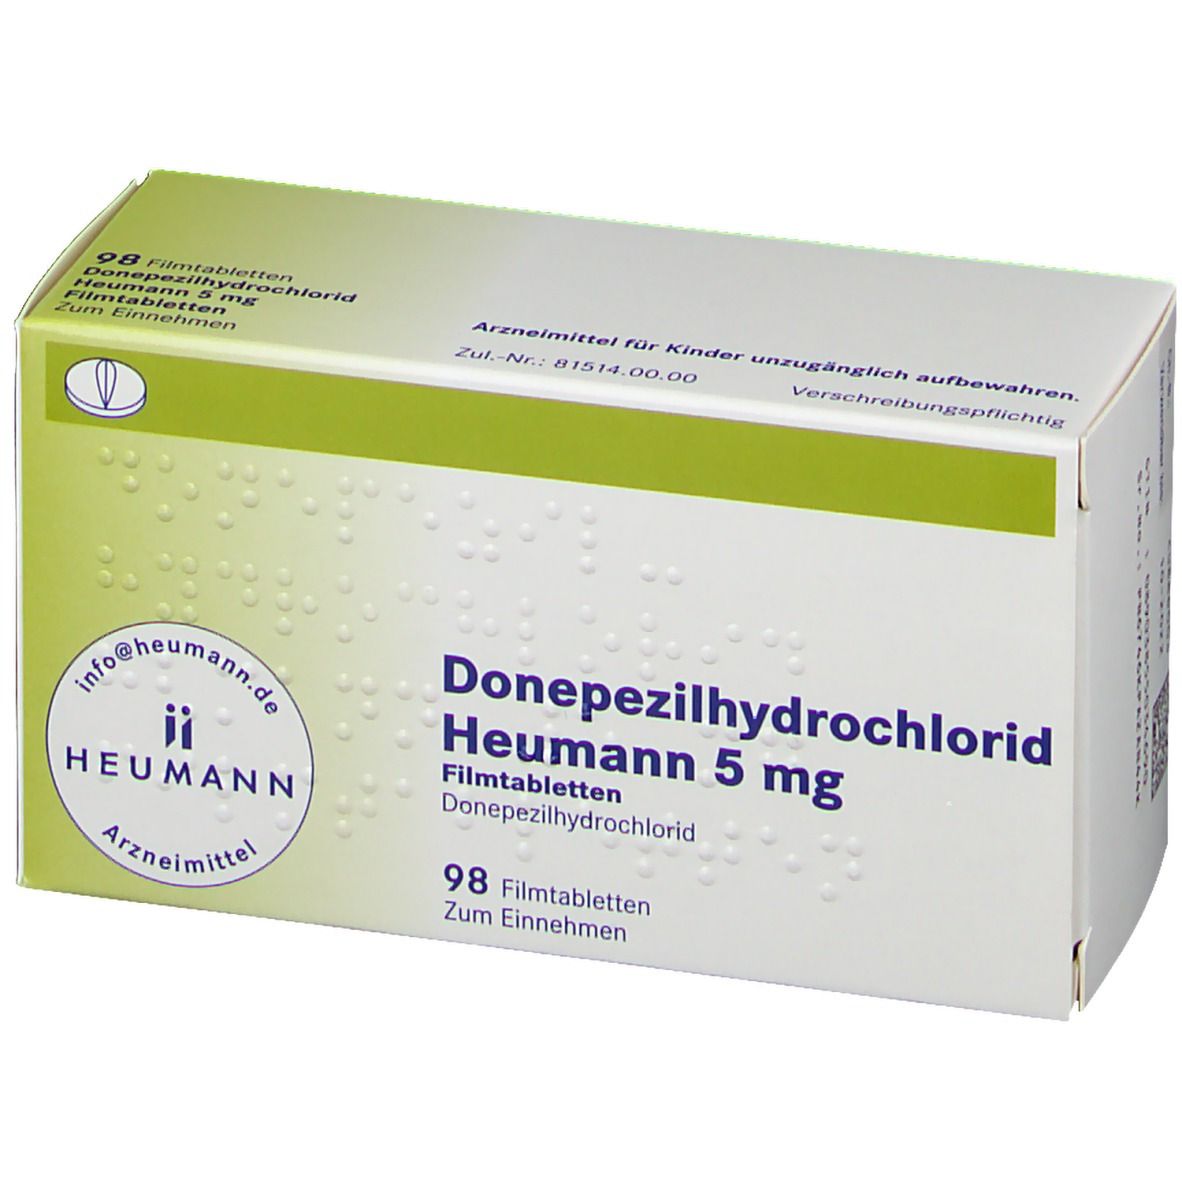 Donepezilhydrochlorid Heumann 5 mg